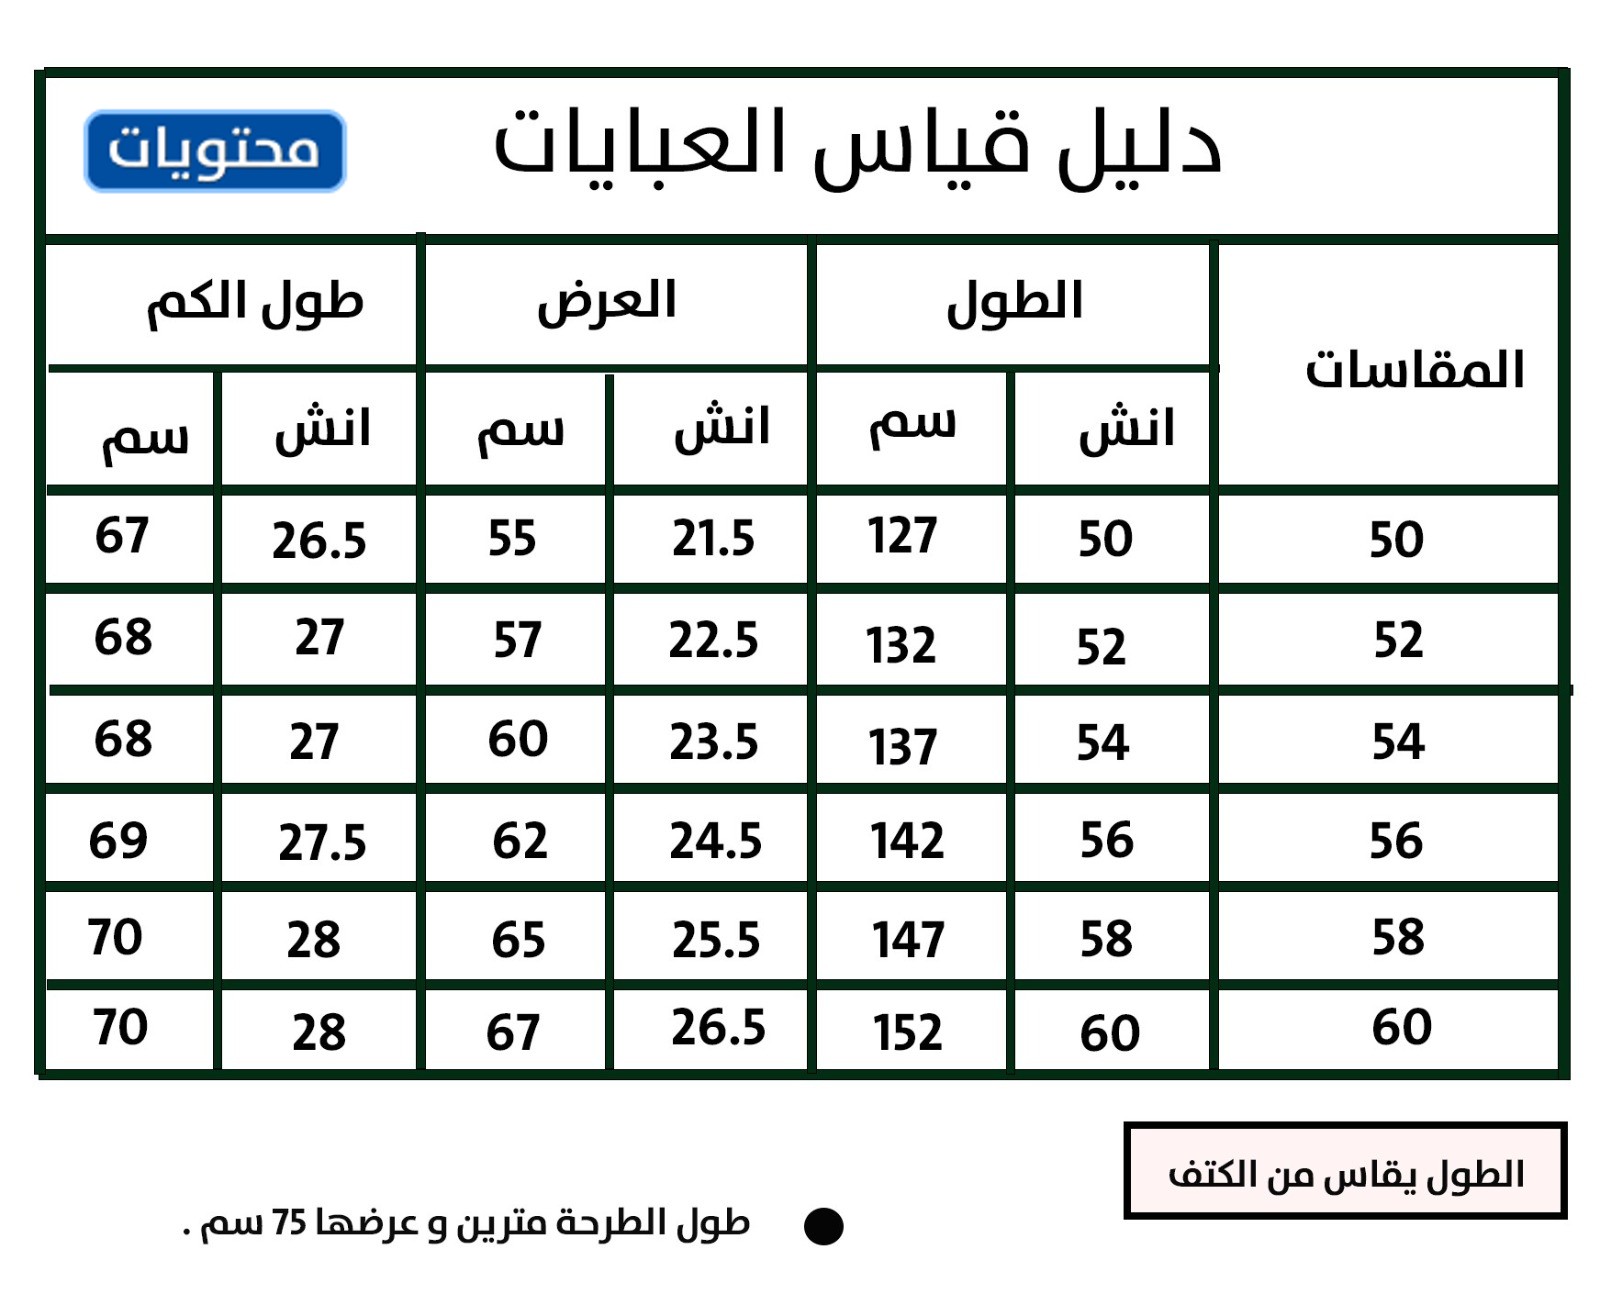 جدول مقاسات العبايات الخليجية